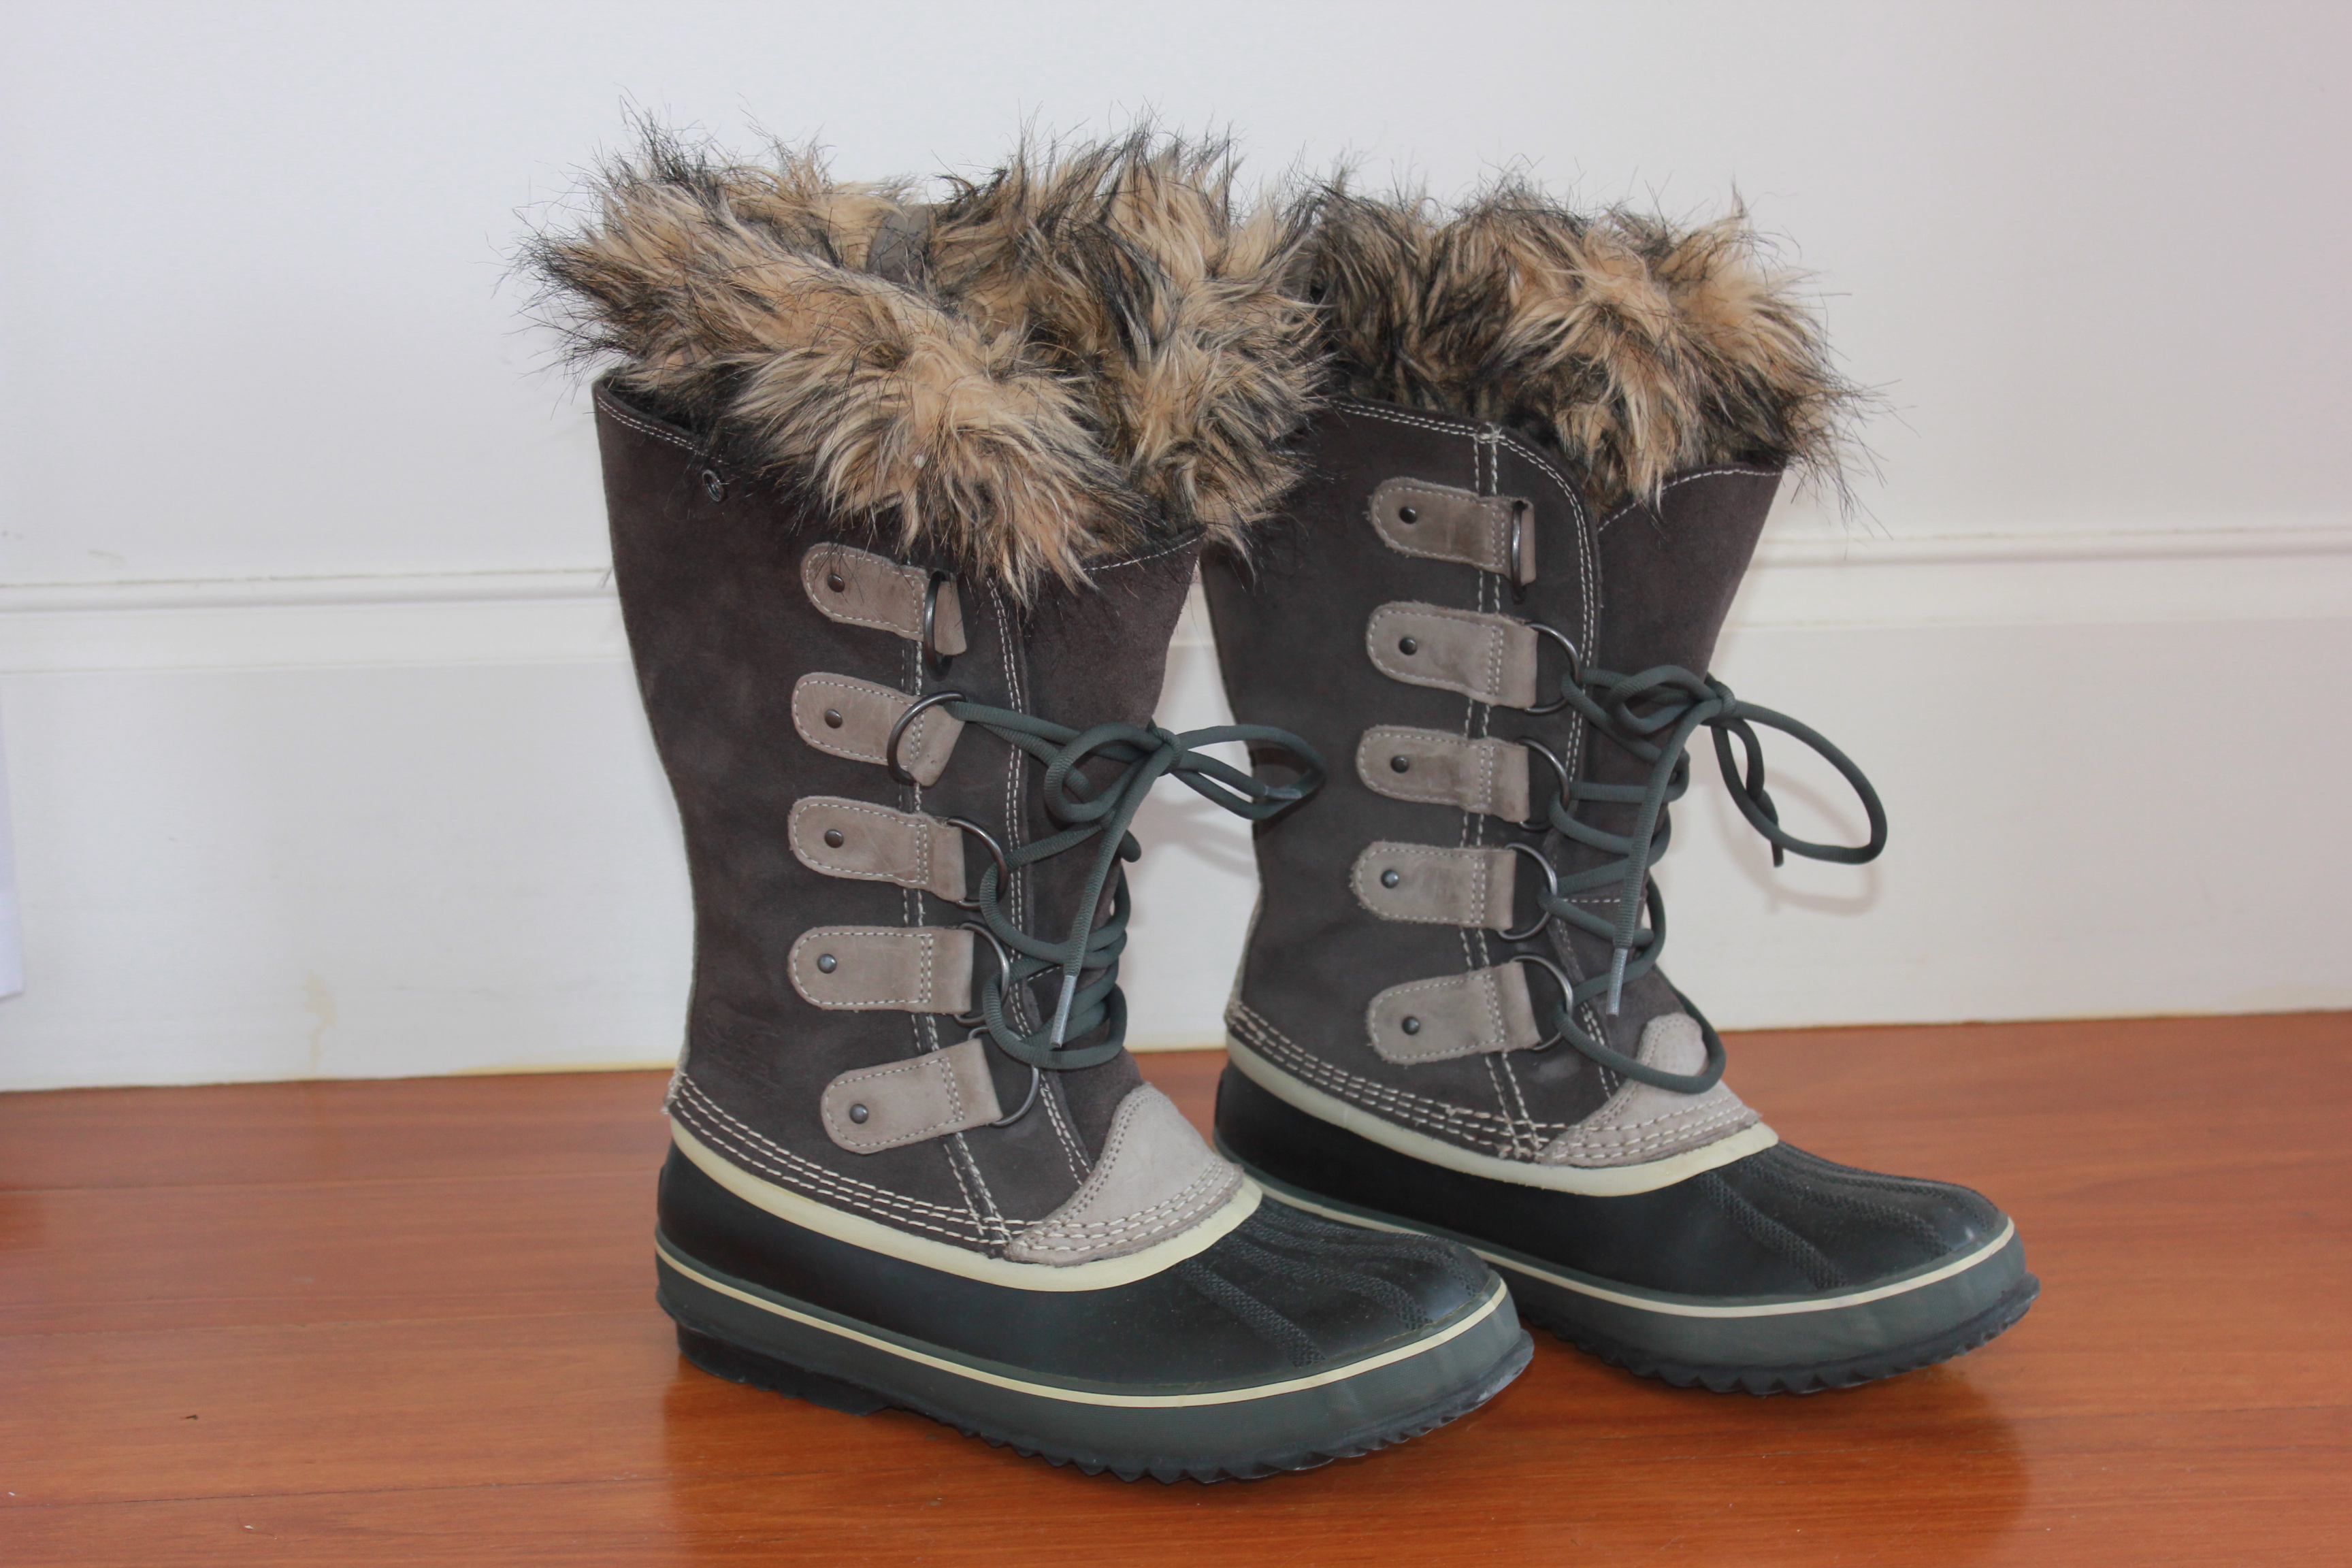 Sorel Joan of Arctic Boots- Gear review 